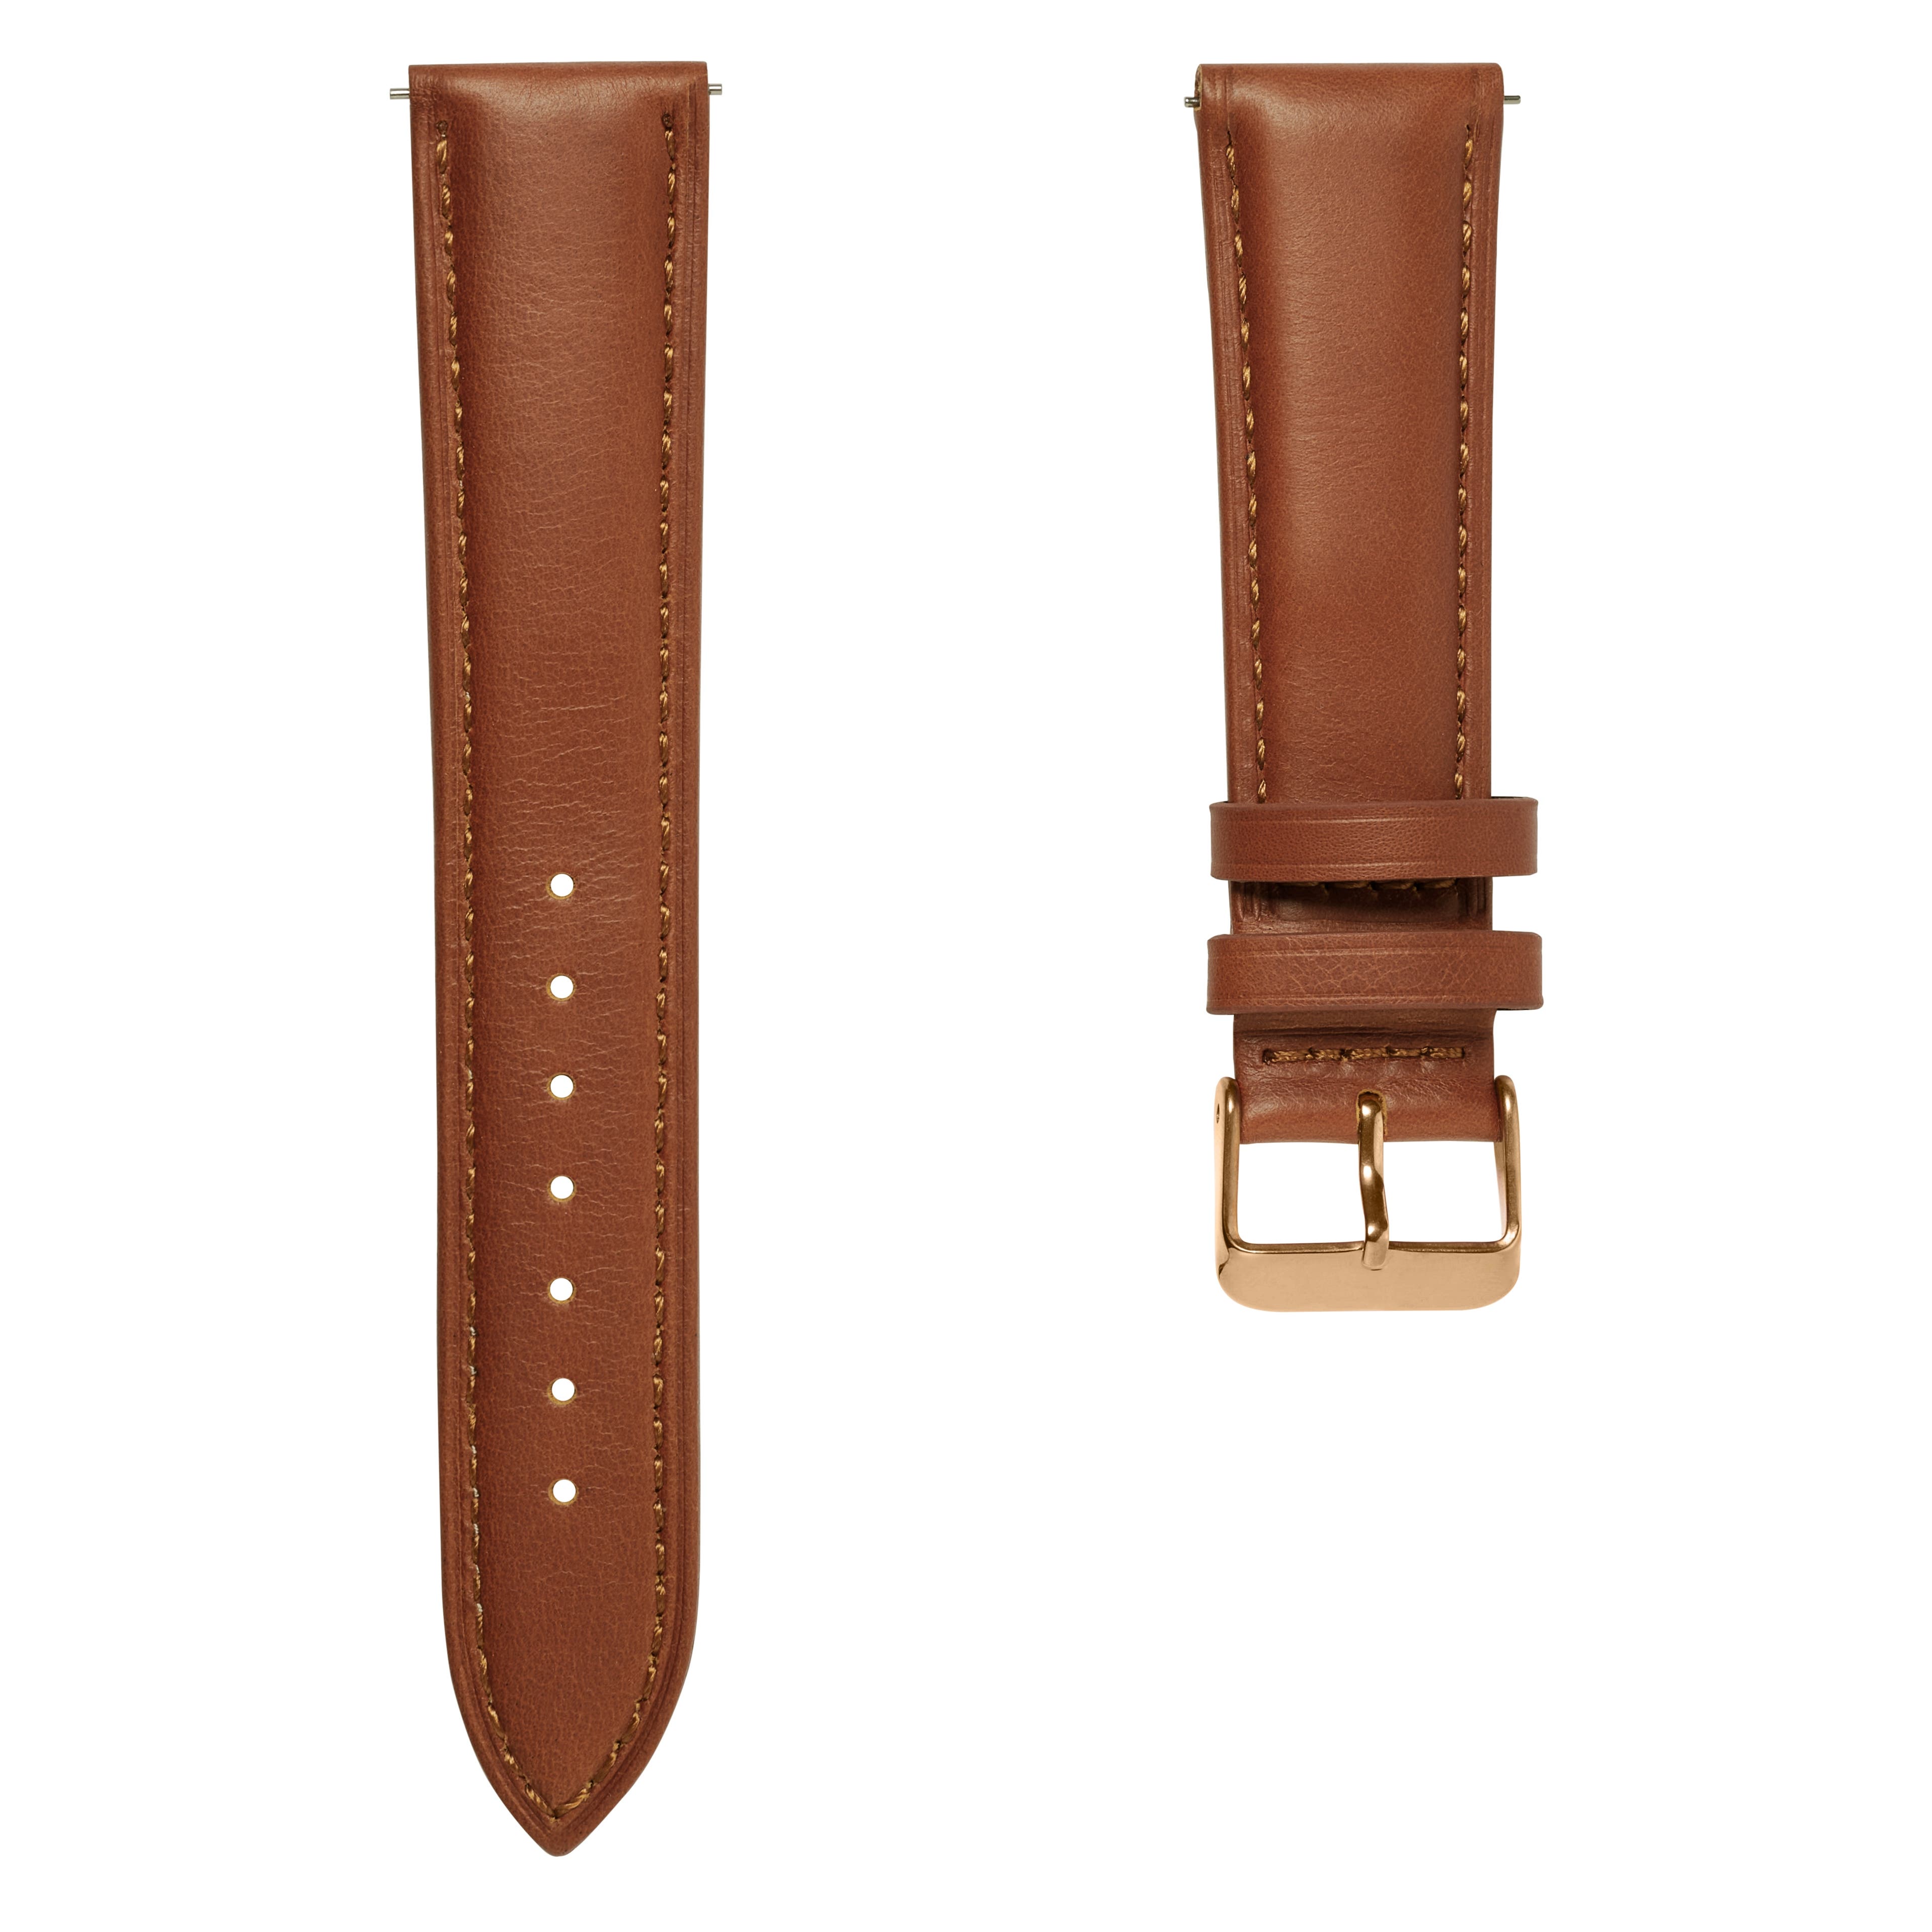 Hellbraunes Leder Uhrenarmband 18mm mit roségoldfarbener Schließe - Schnellverschluss